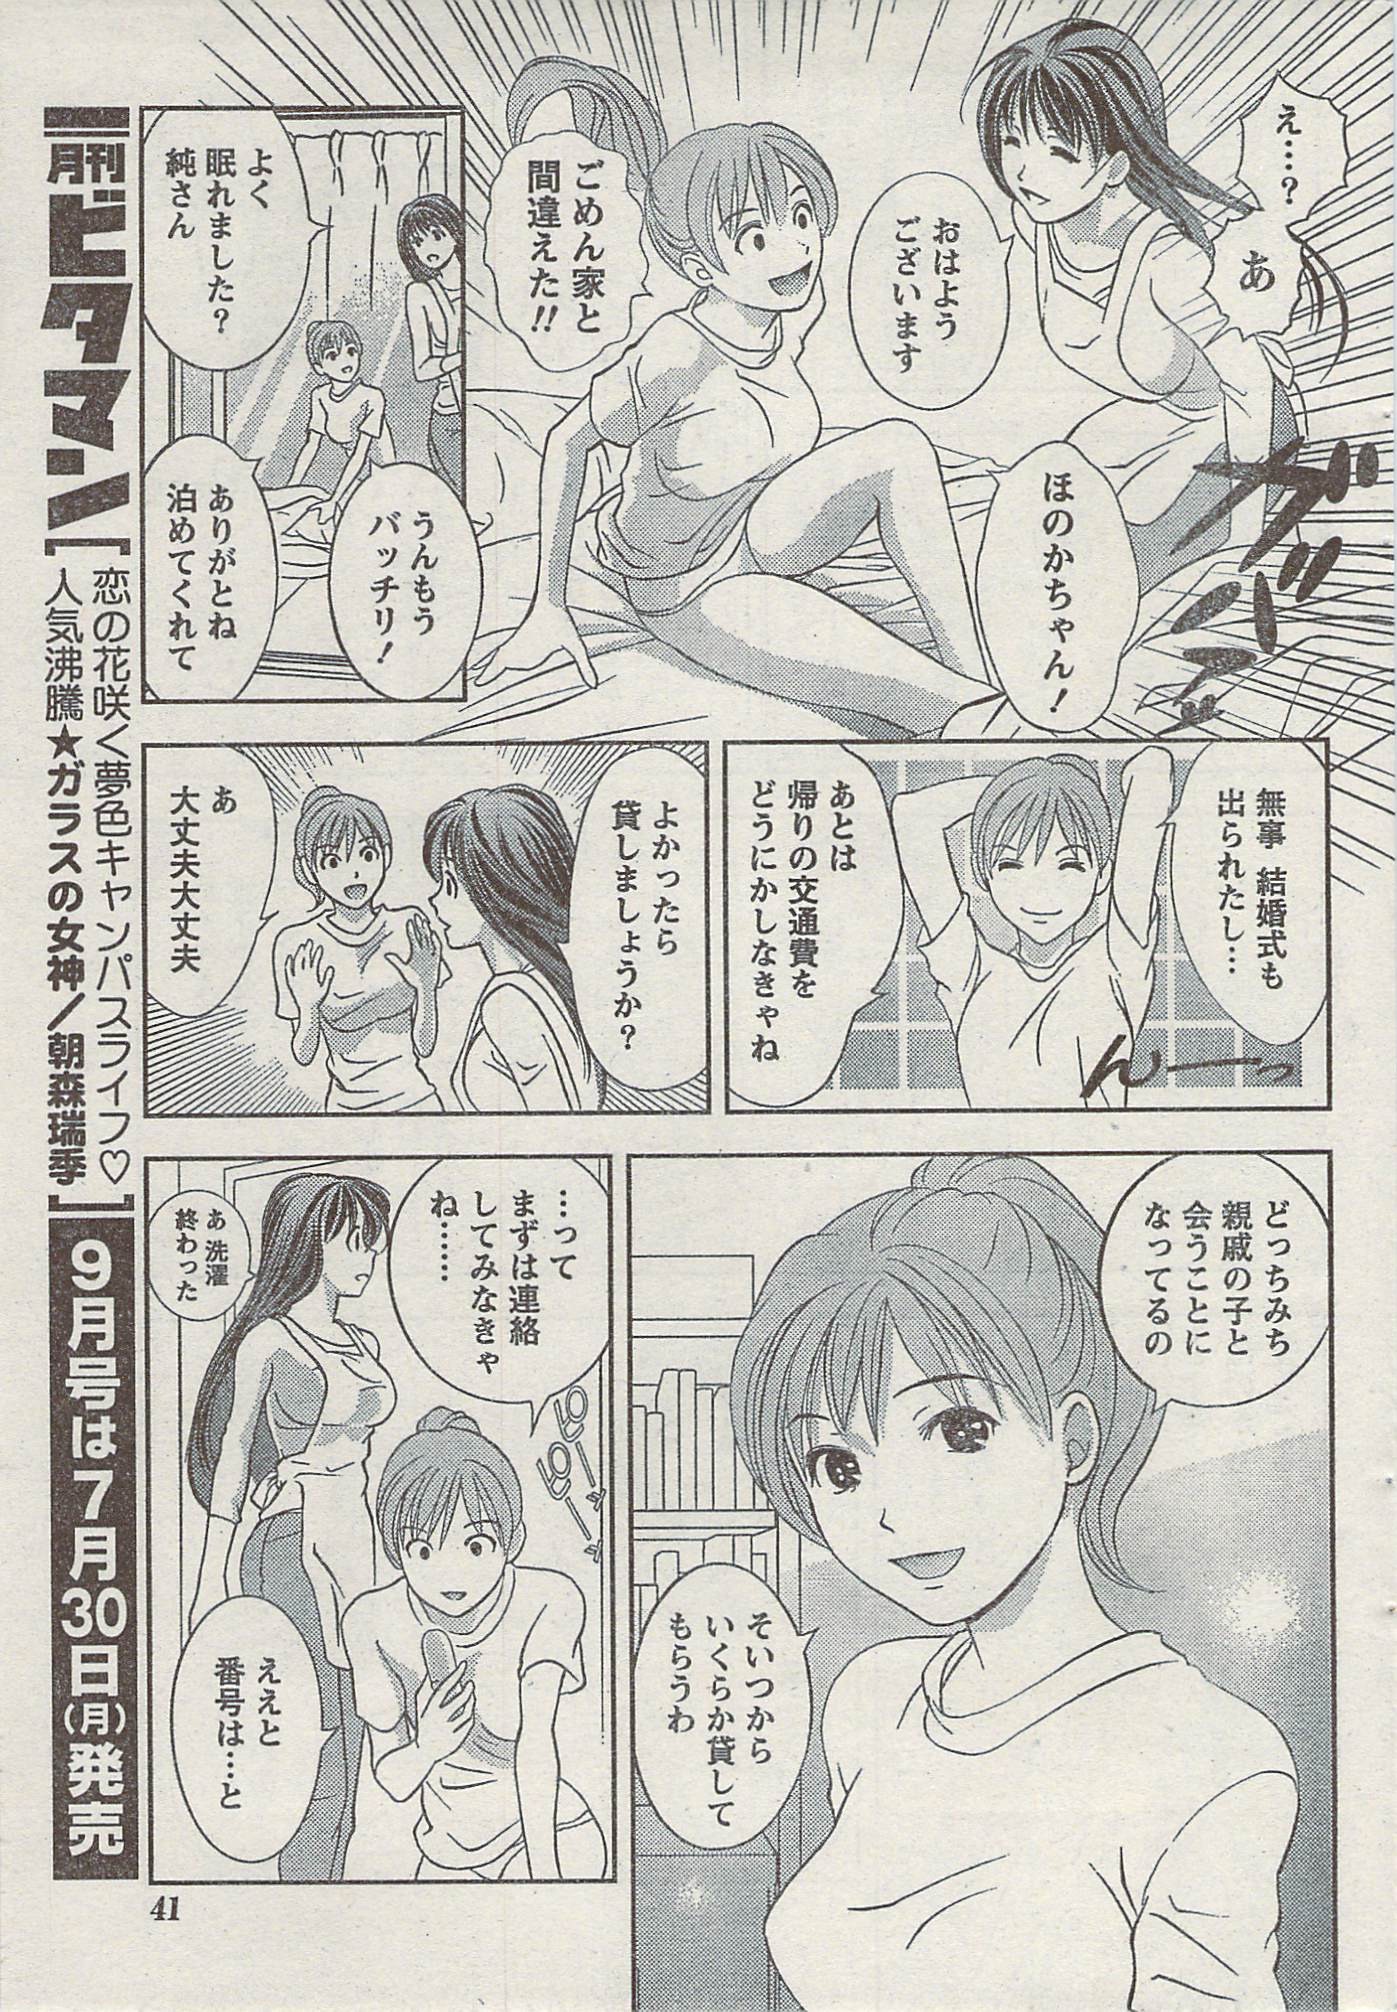 Akabane and Kimi-chan hentai manga picture 41